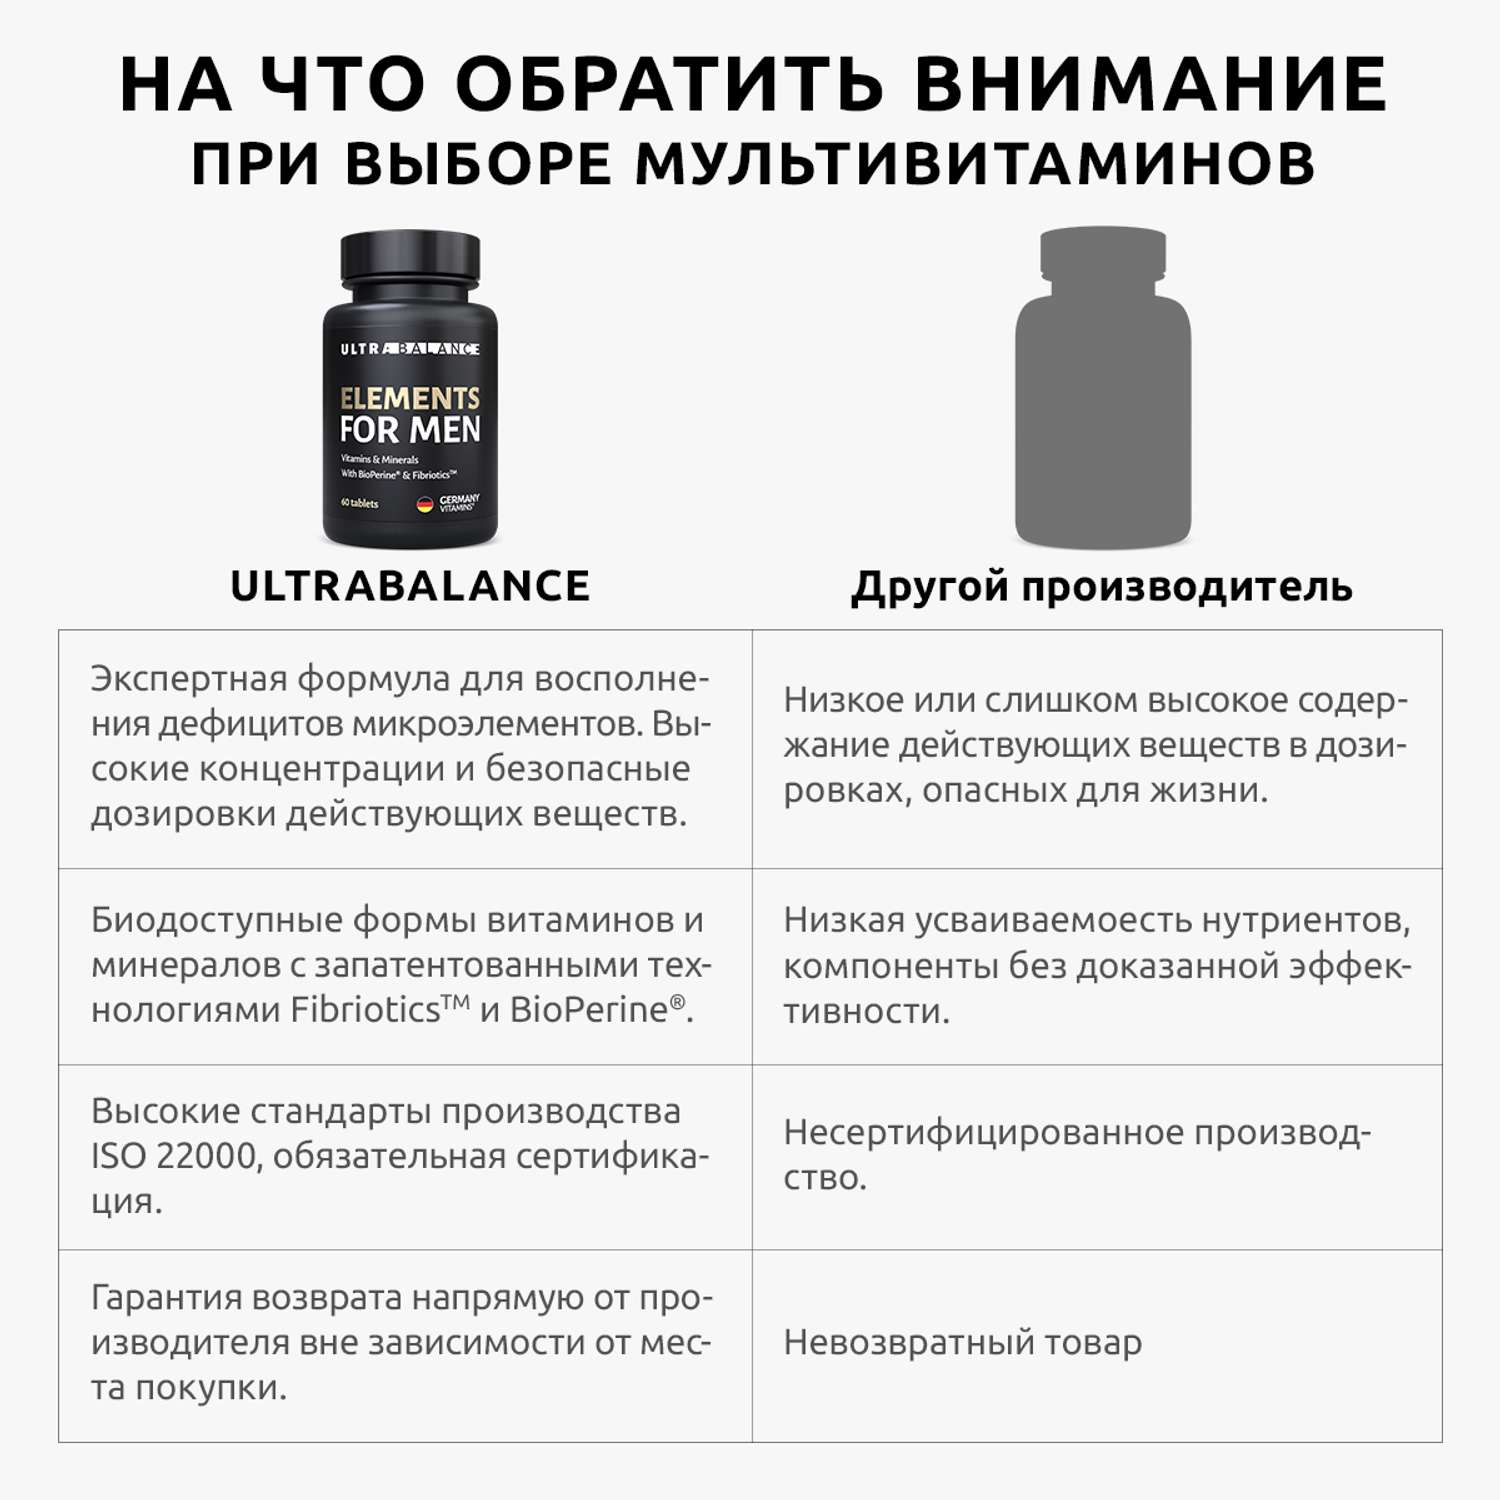 Витамины и минералы для мужчин UltraBalance Elements for men Omega 3 премиум - фото 12